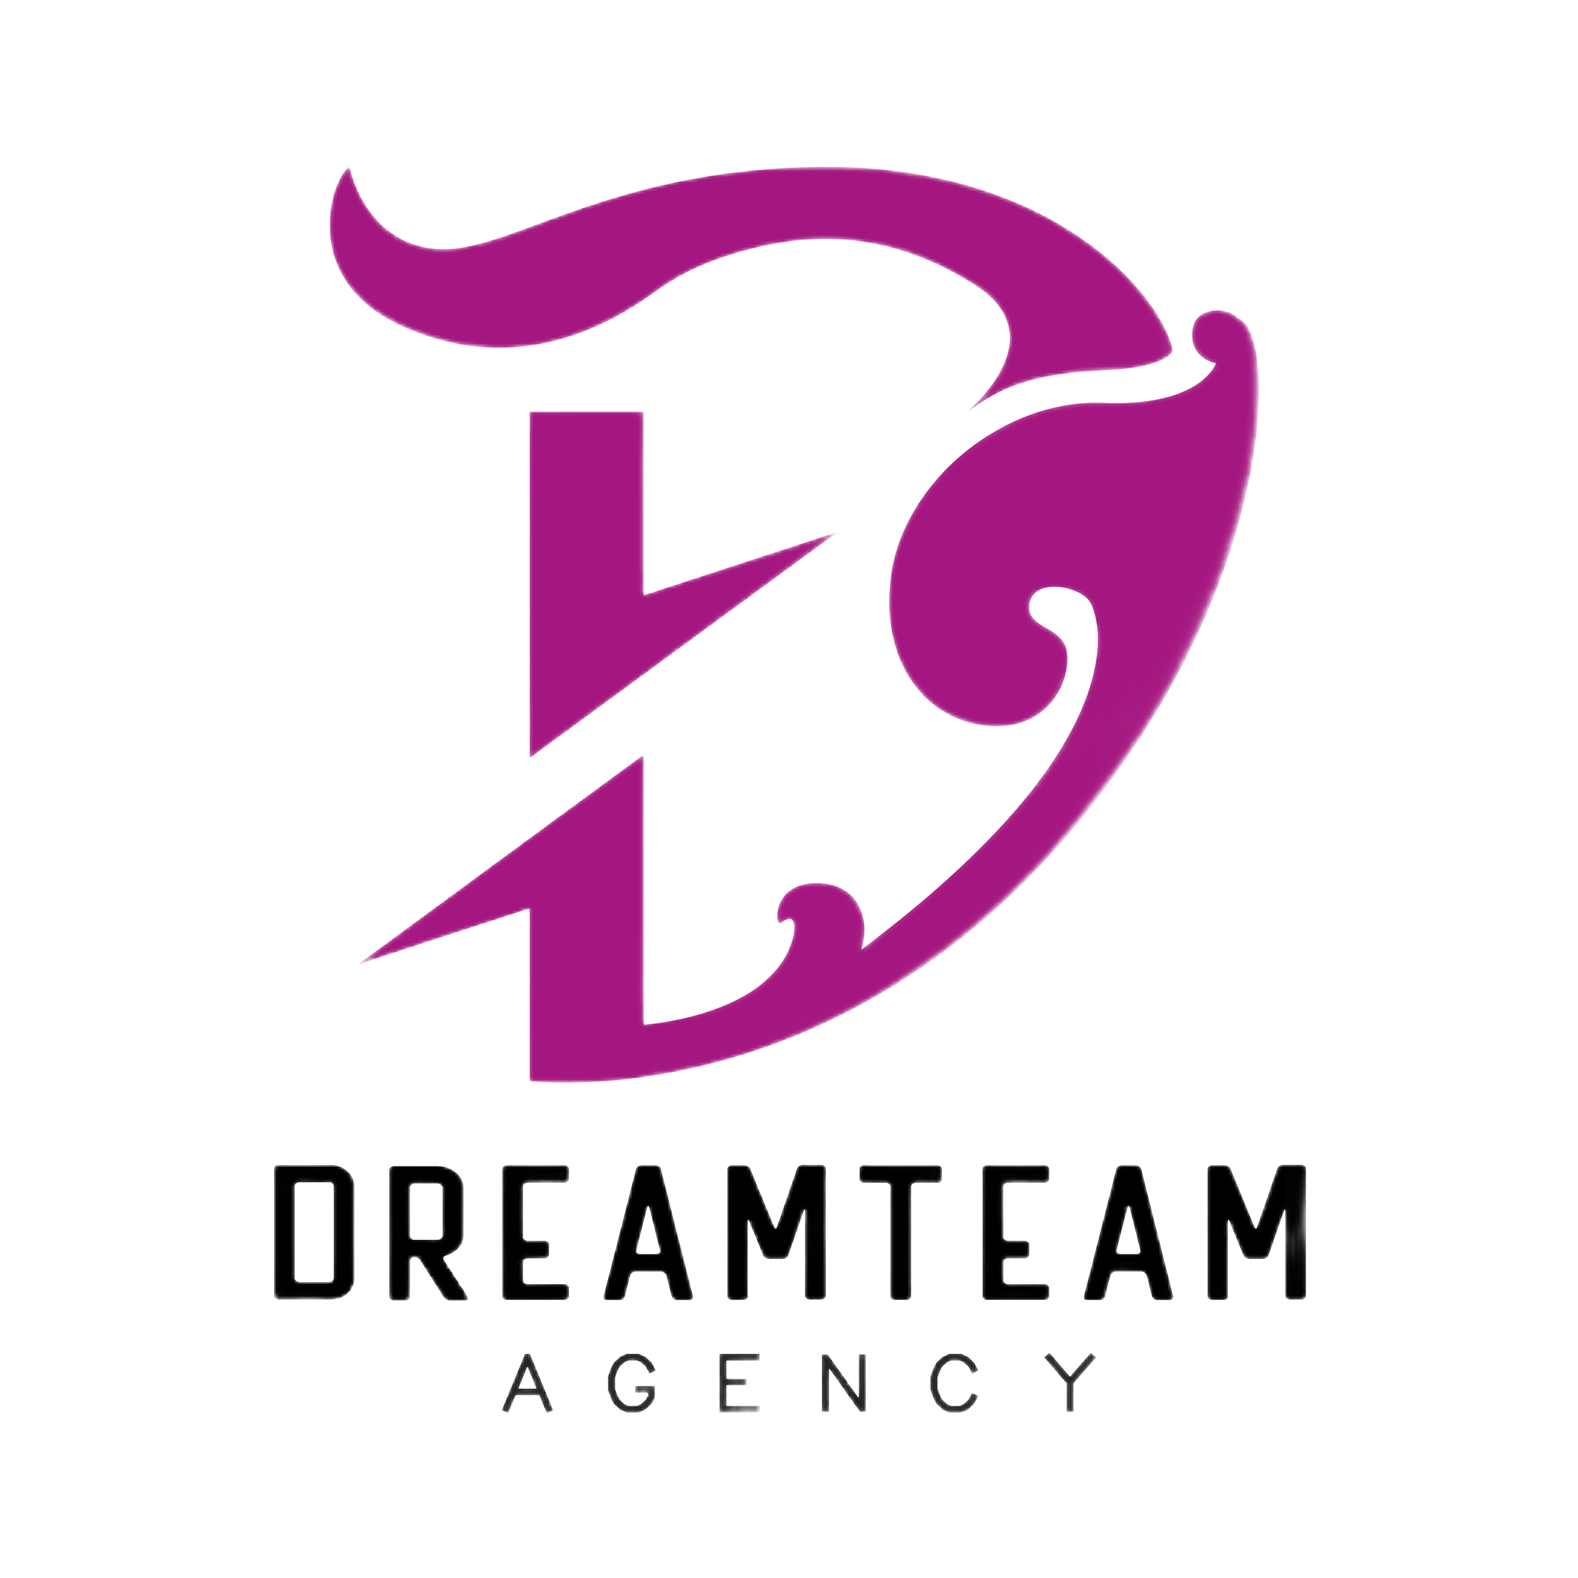 DreamTeam Agency